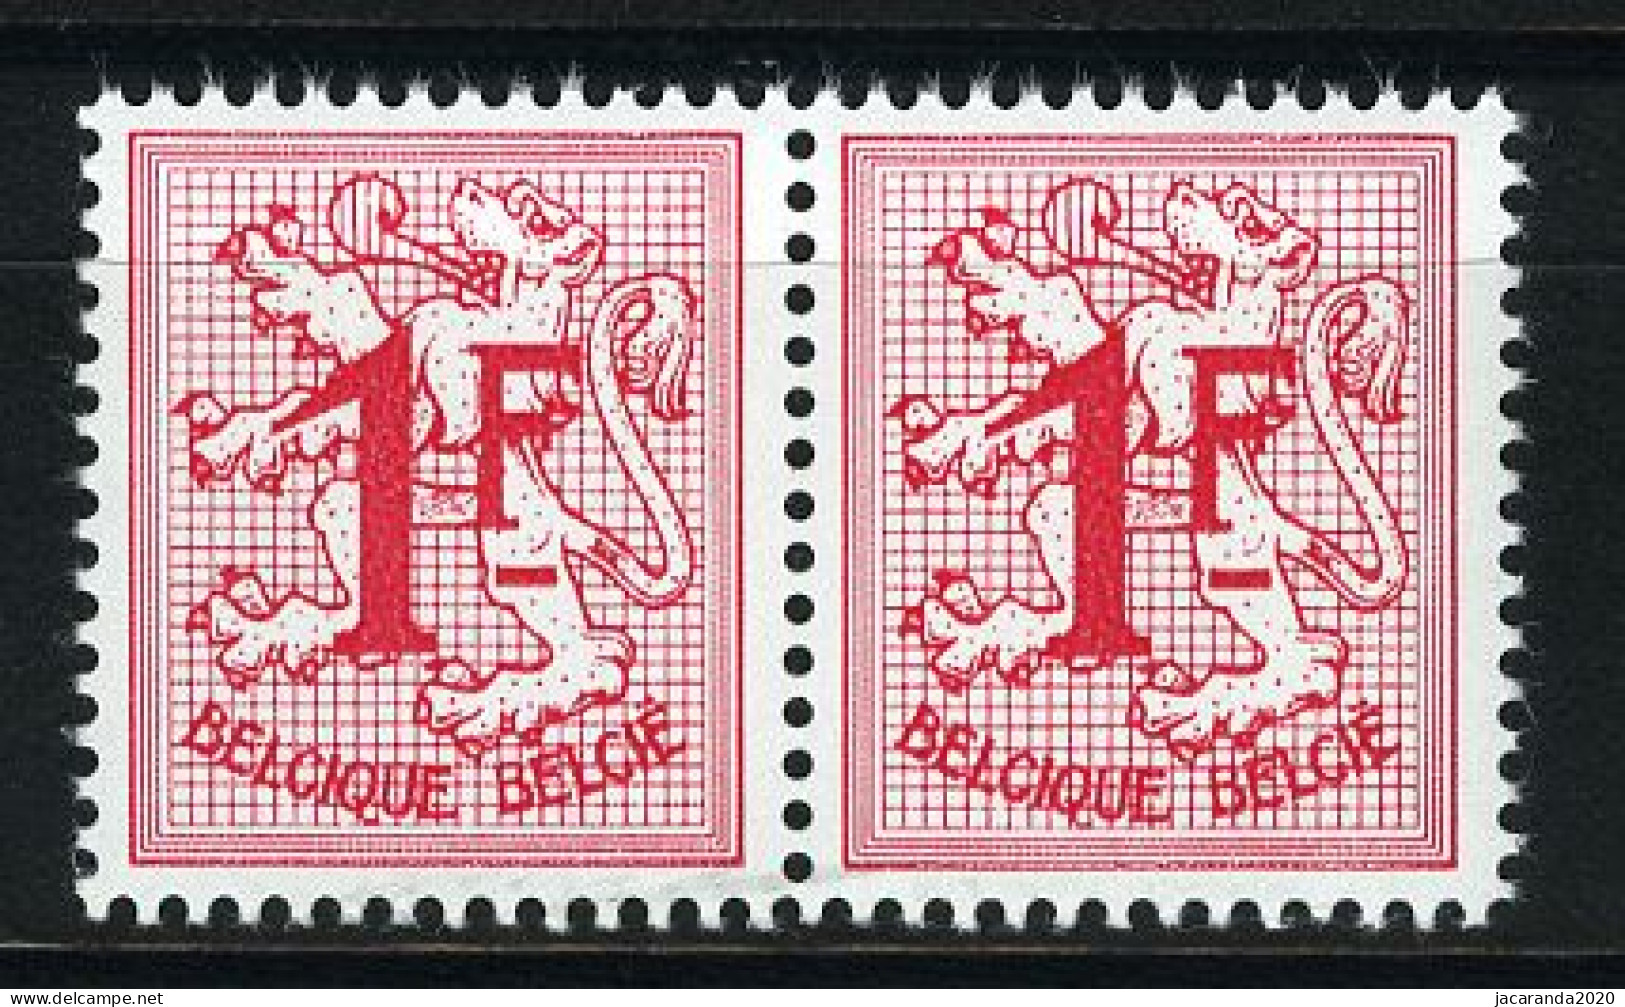 België R6a - Cijfer Op Heraldieke Leeuw - 1F Helrood - In Horizontaal Paar (uit De Vellen Van 60) - Rollen